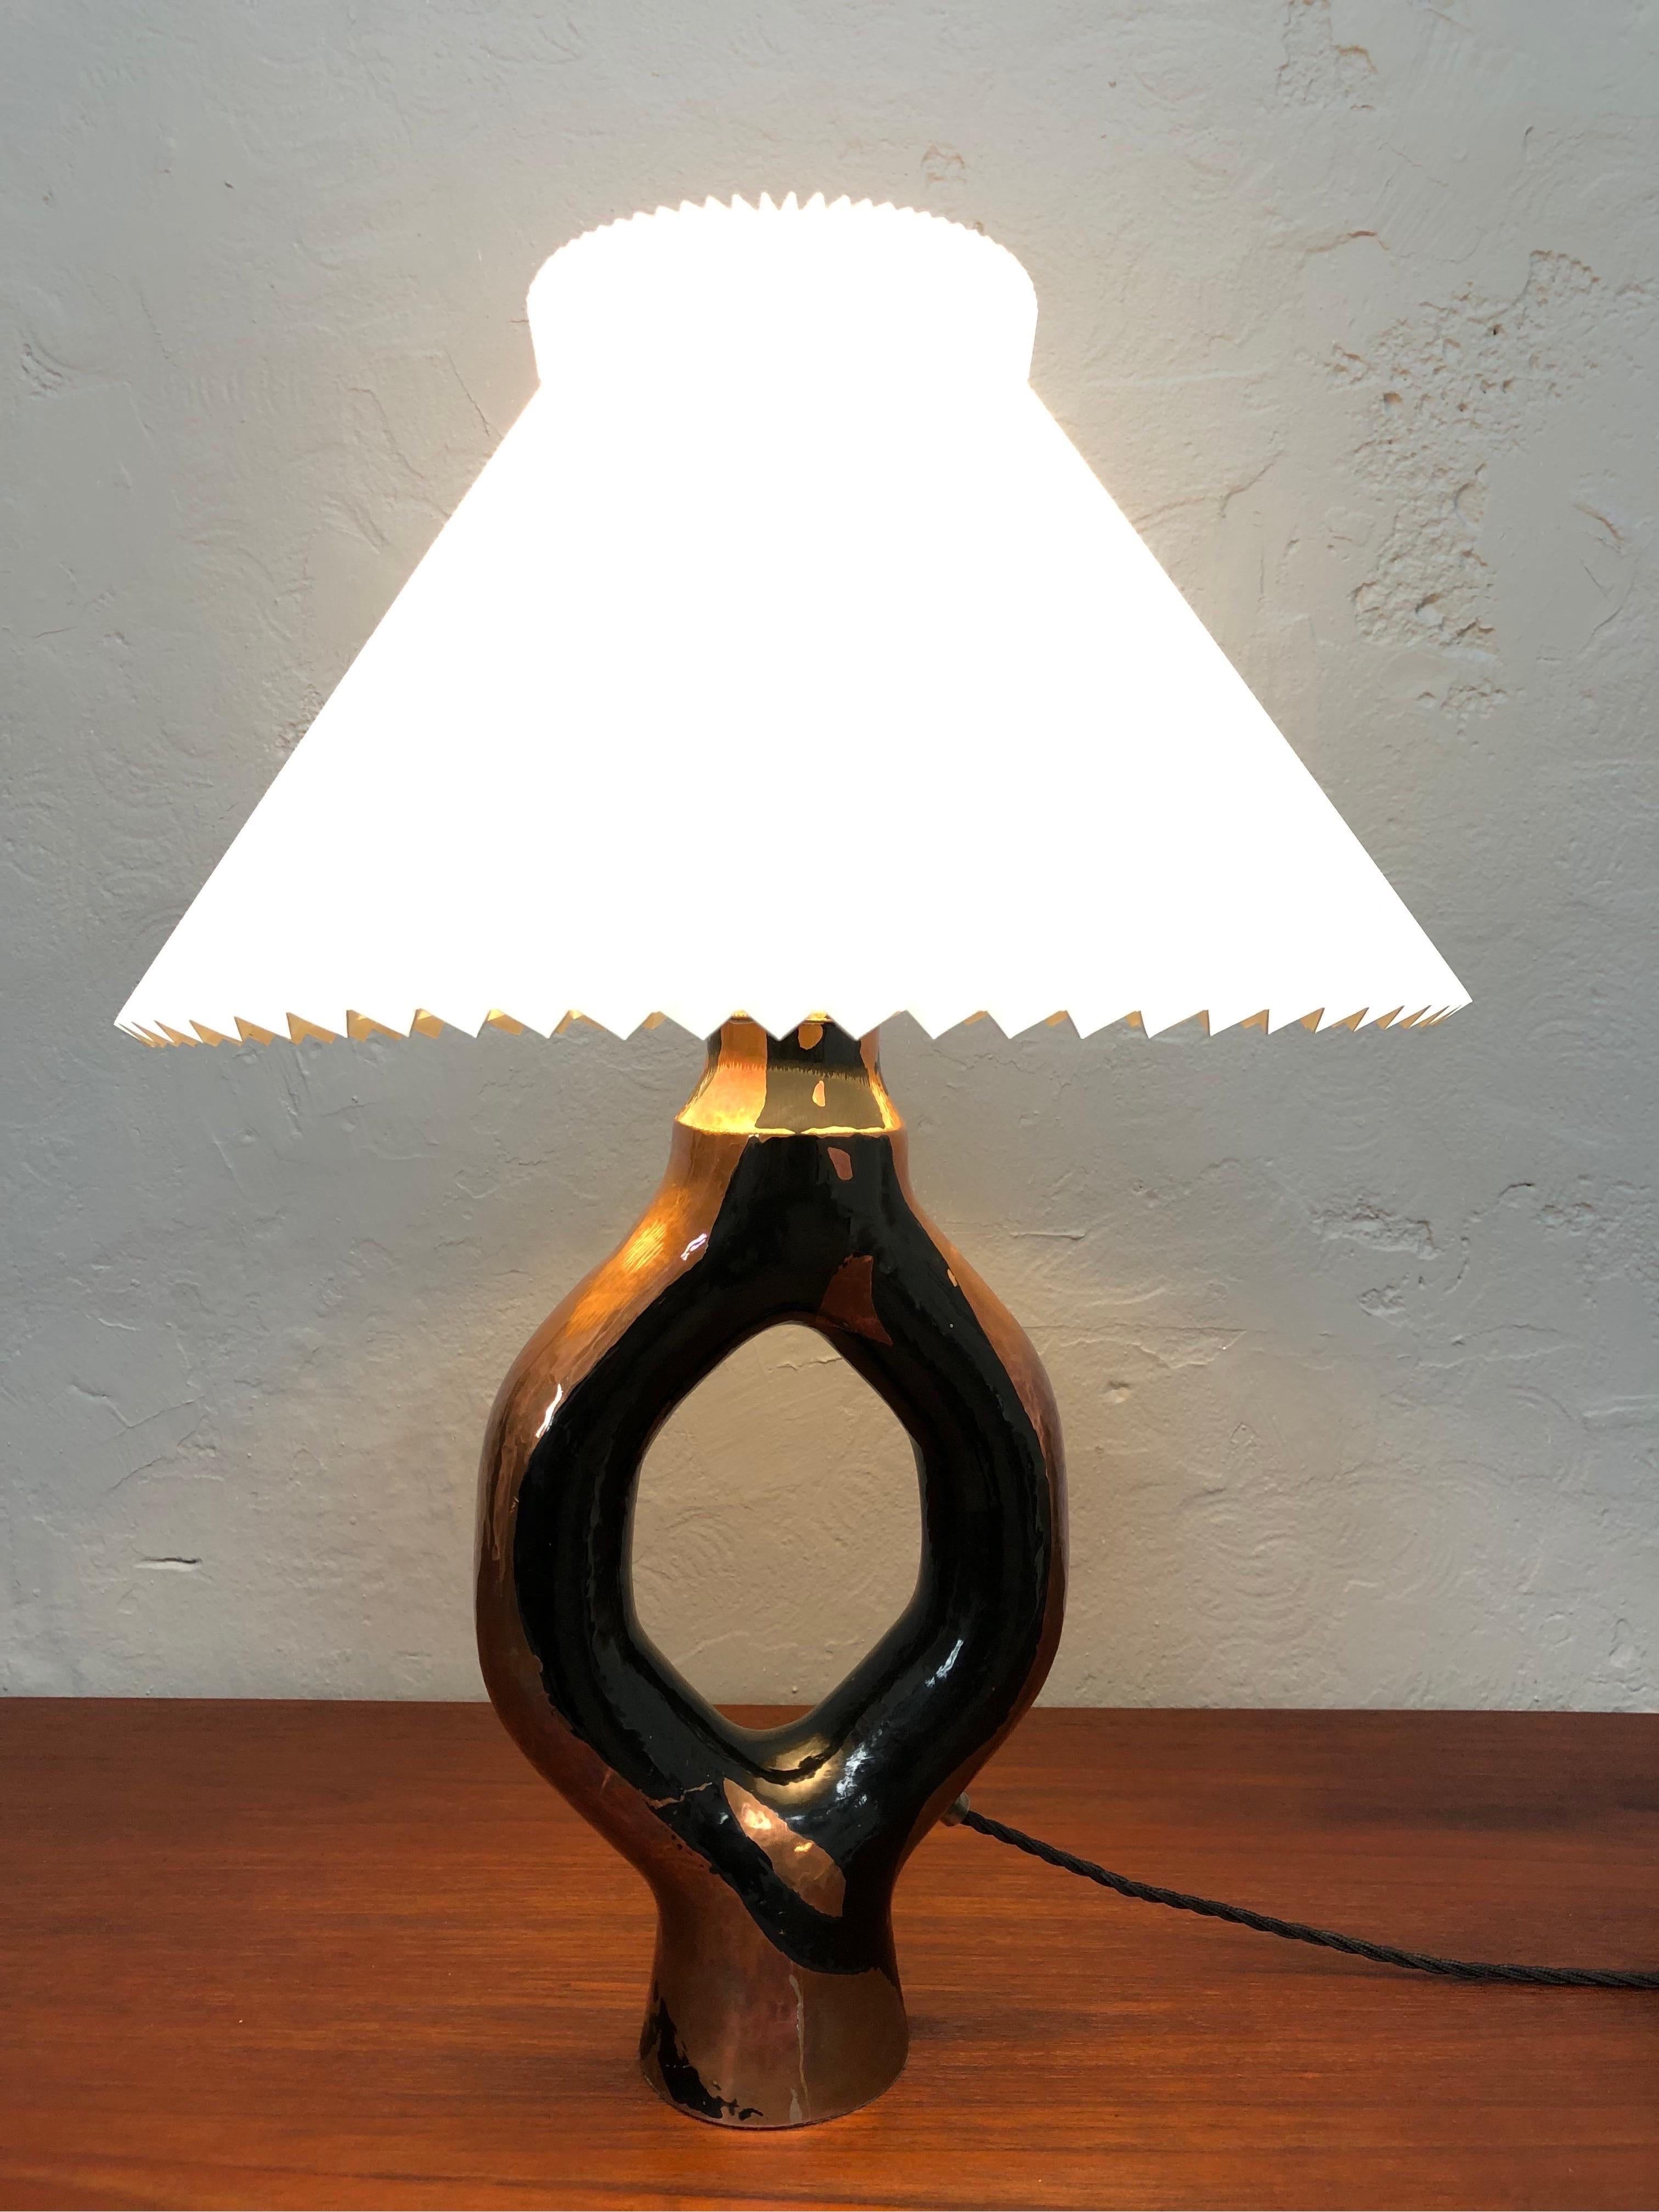 Lampe de table artisanale sculpturale vintage des années 1960 en cuivre.
Habilement réalisé dans un beau design d'époque.
Il est plus que probable qu'il s'agisse d'un morceau d'UNICA.
La lampe a été nettoyée, recâblée avec un tissu noir torsadé et